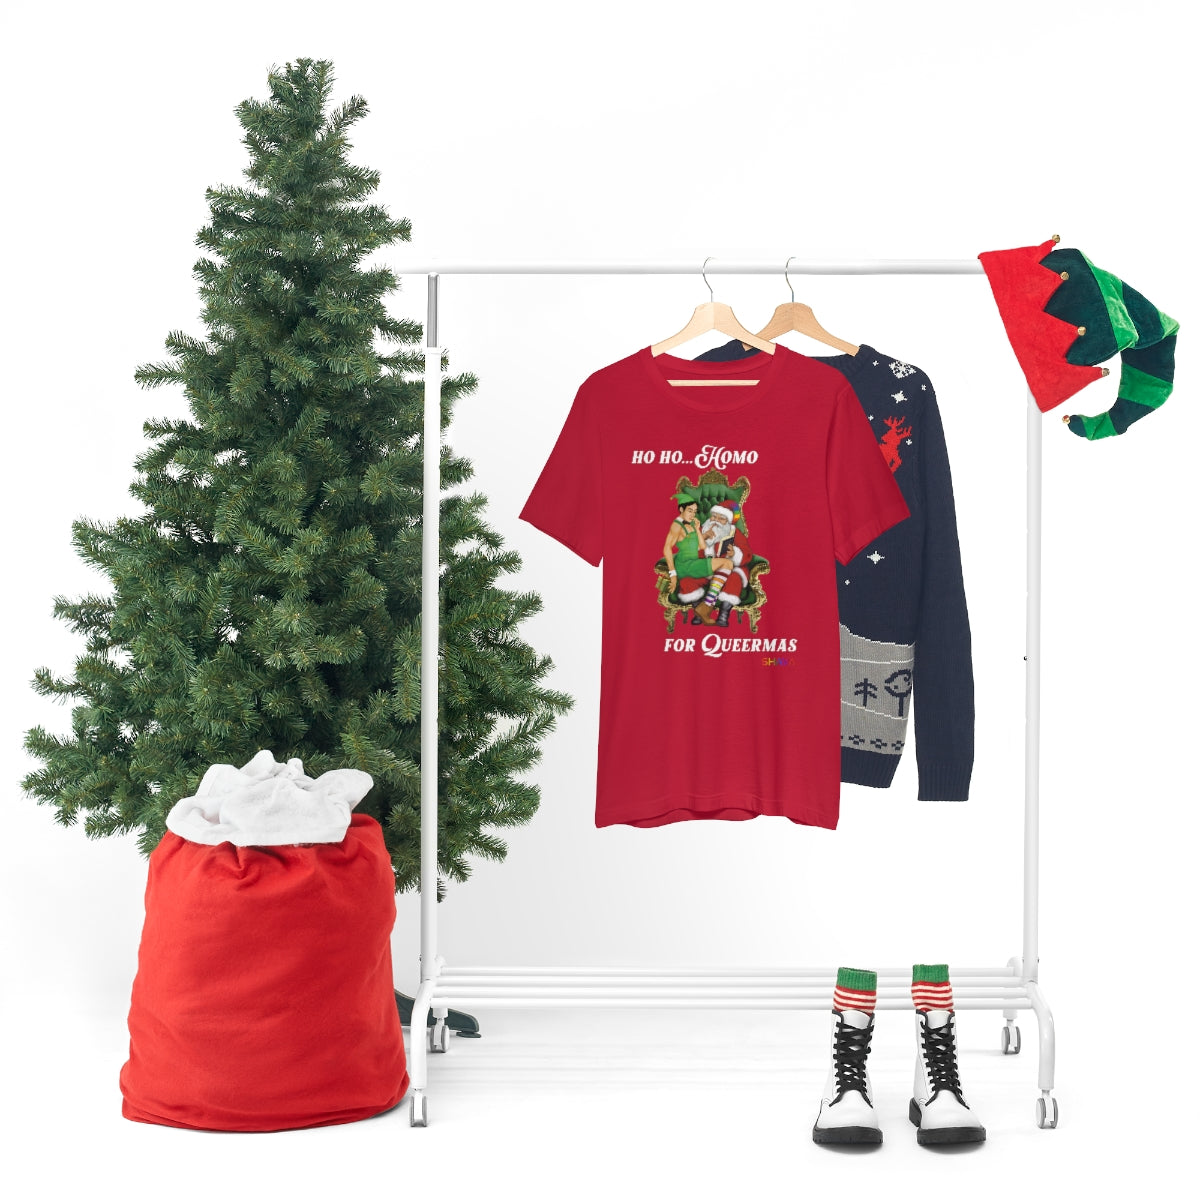 Classic Unisex Christmas LGBTQ Holigays T-Shirt - Hoho(Asian) Printify